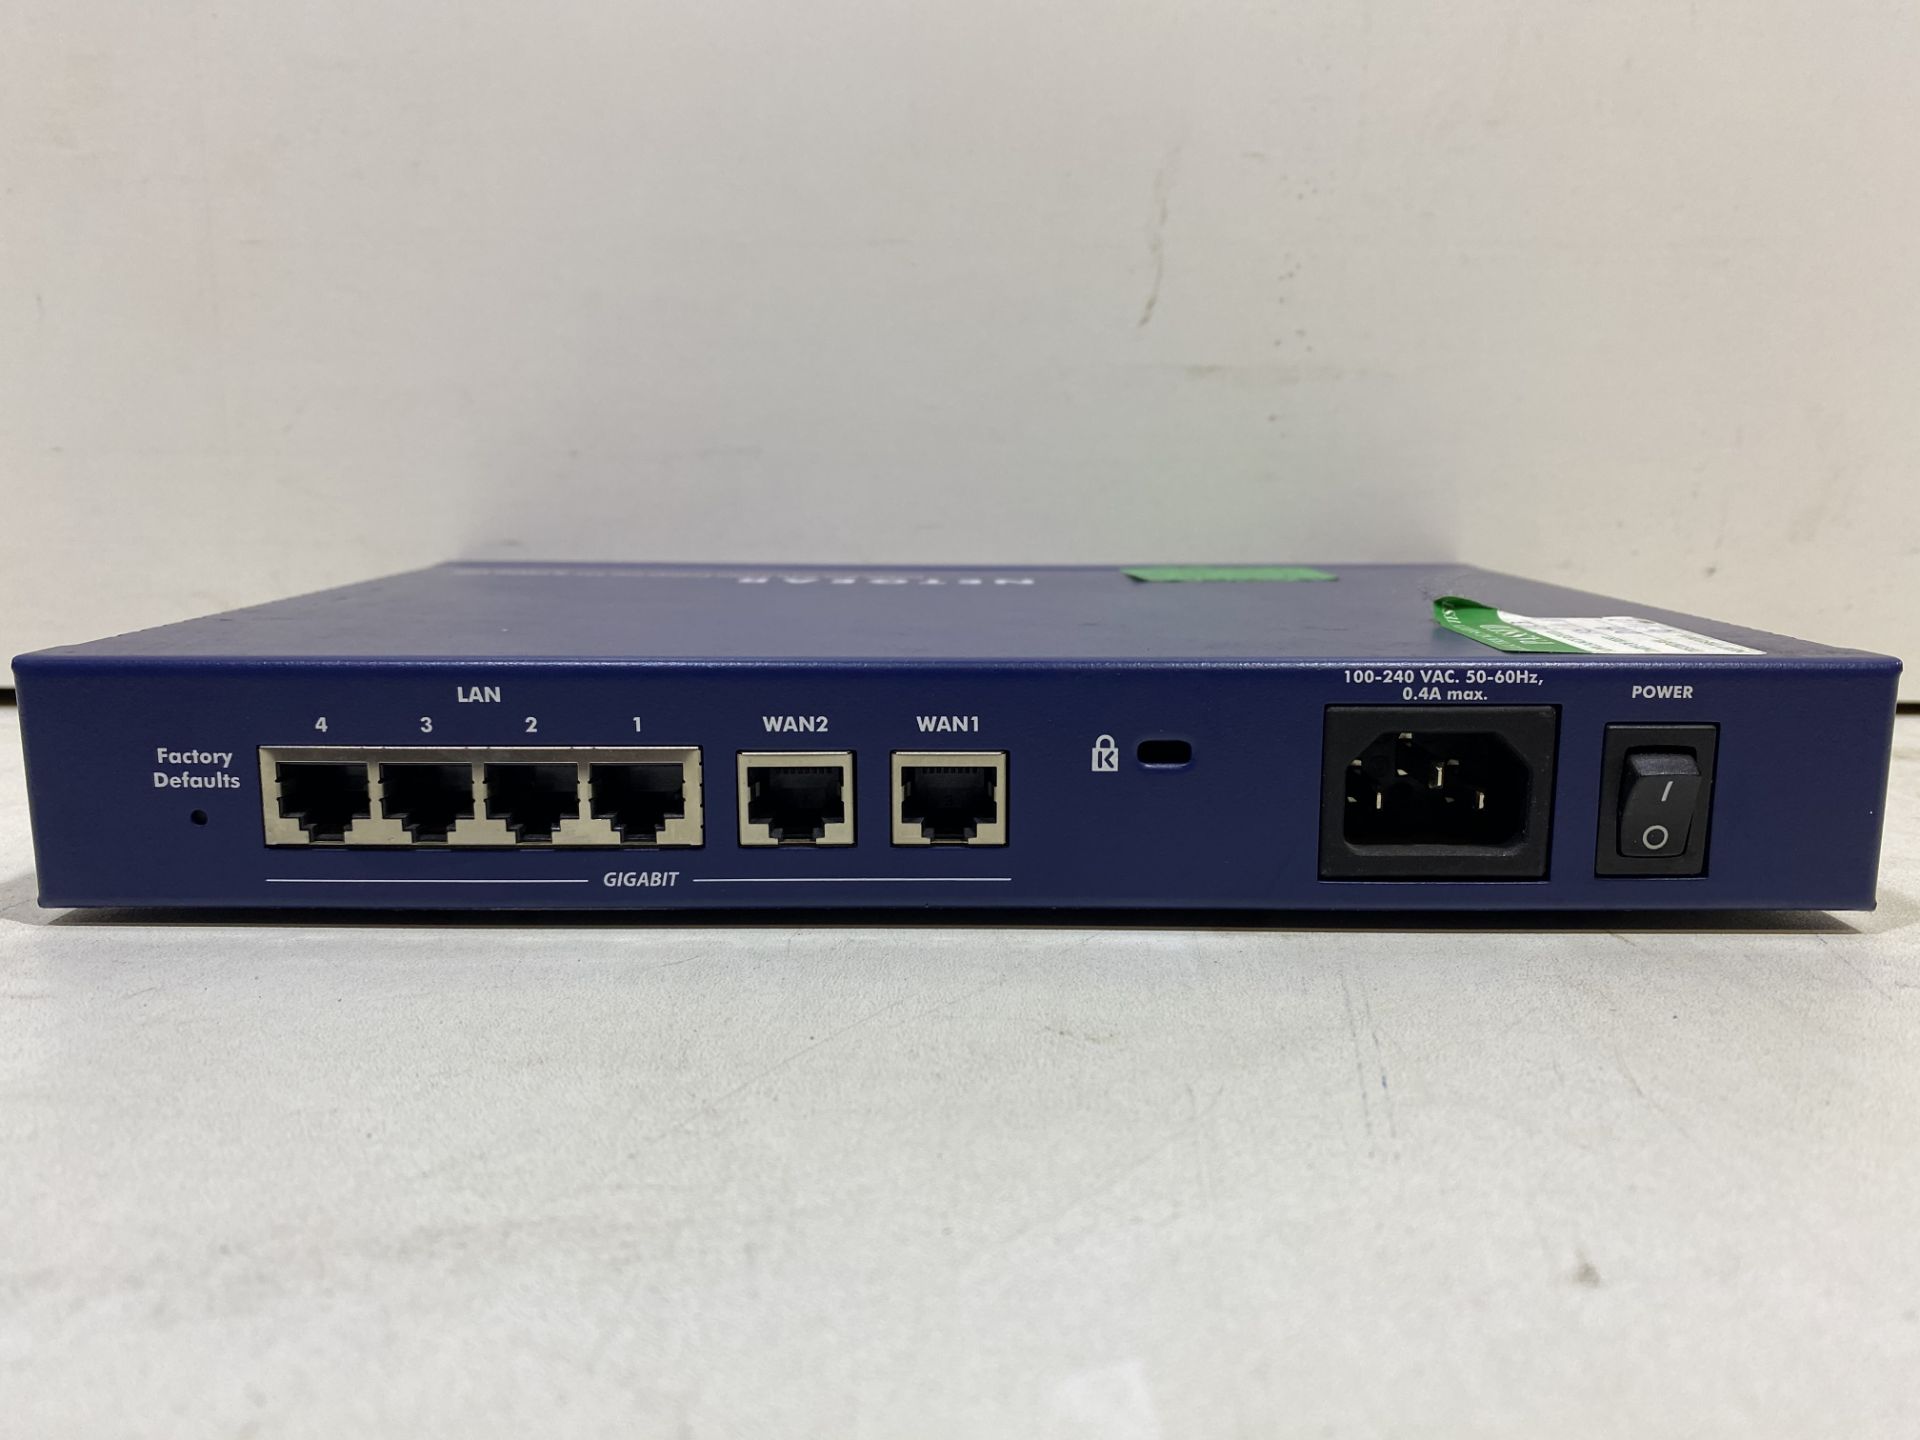 Netgear FVS336G Gigabit Firewall Router - Image 3 of 7